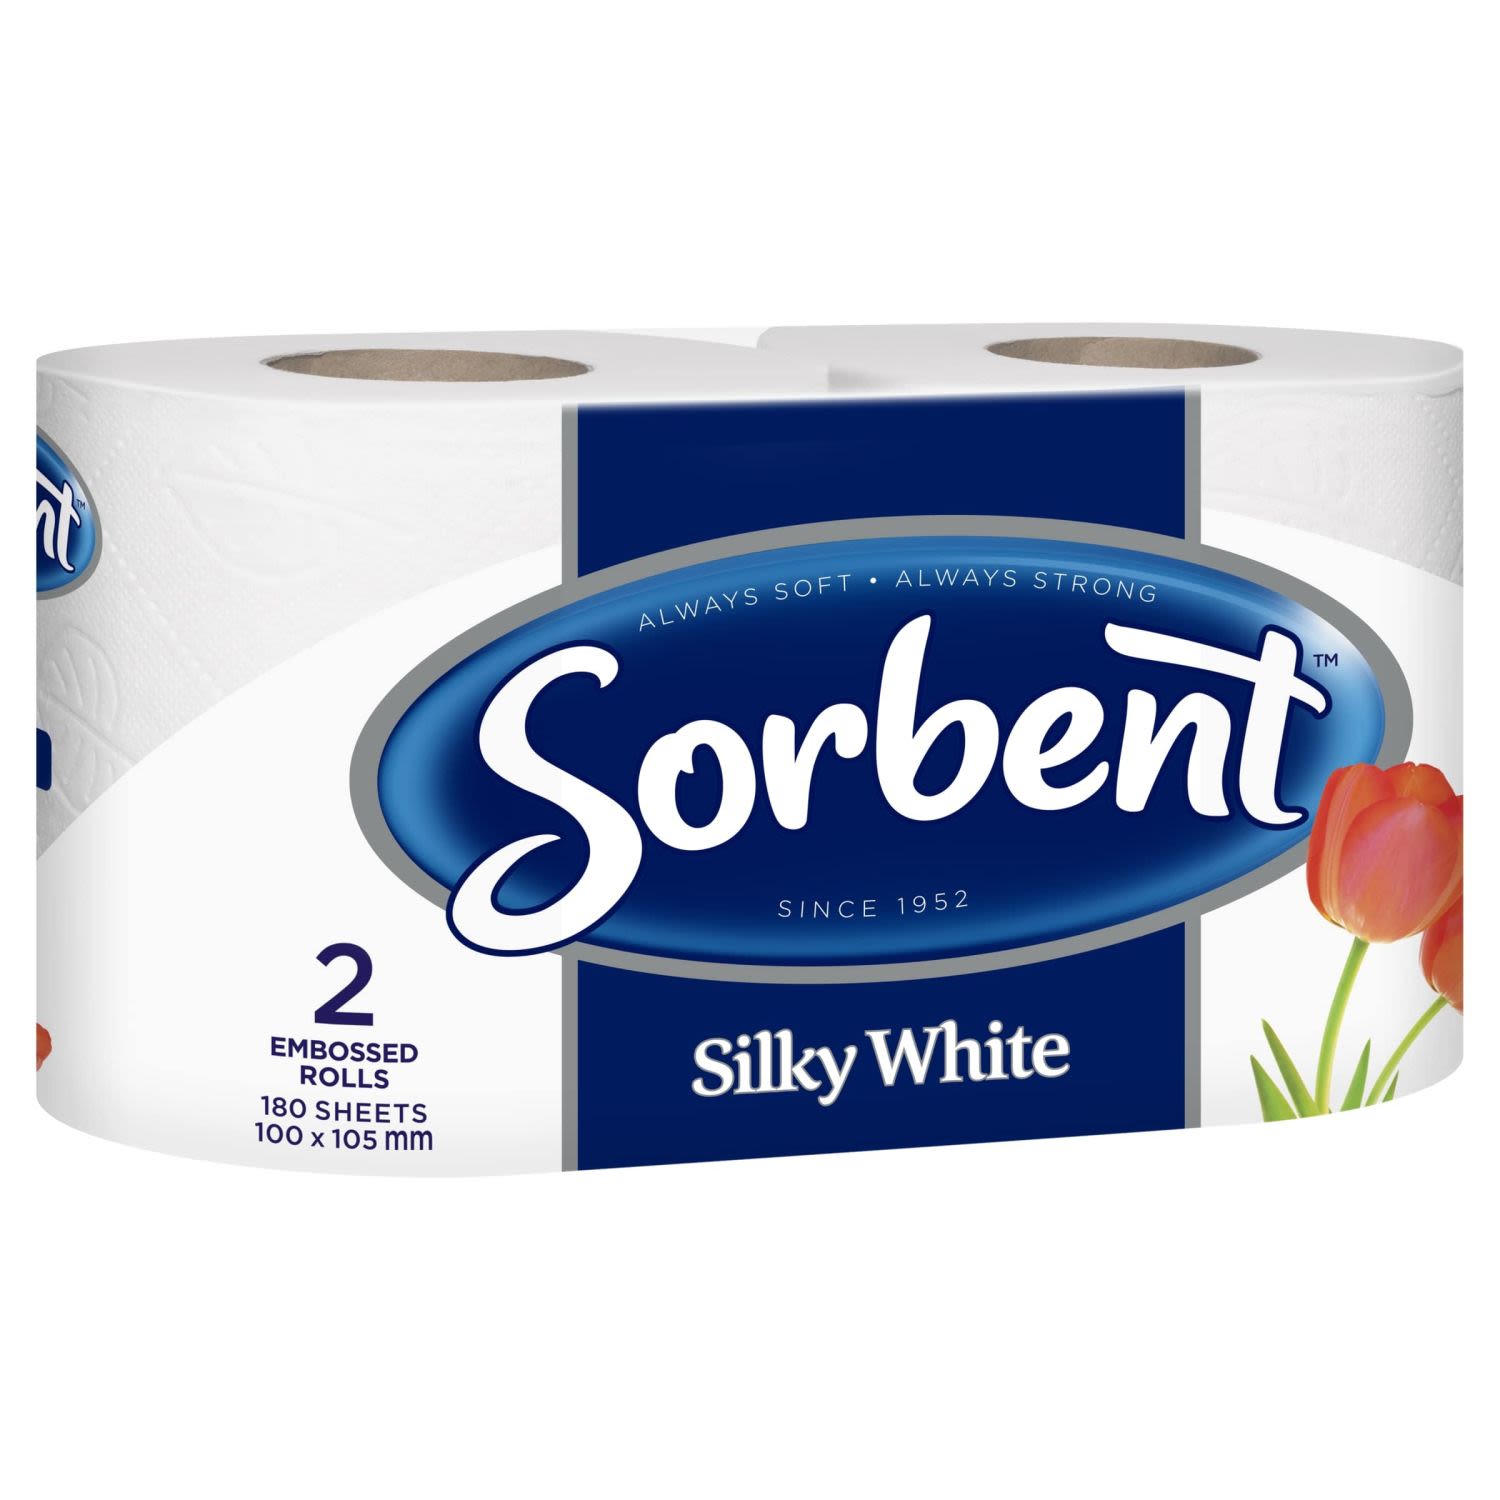 Silky White Toilet Tissue, 2 Each